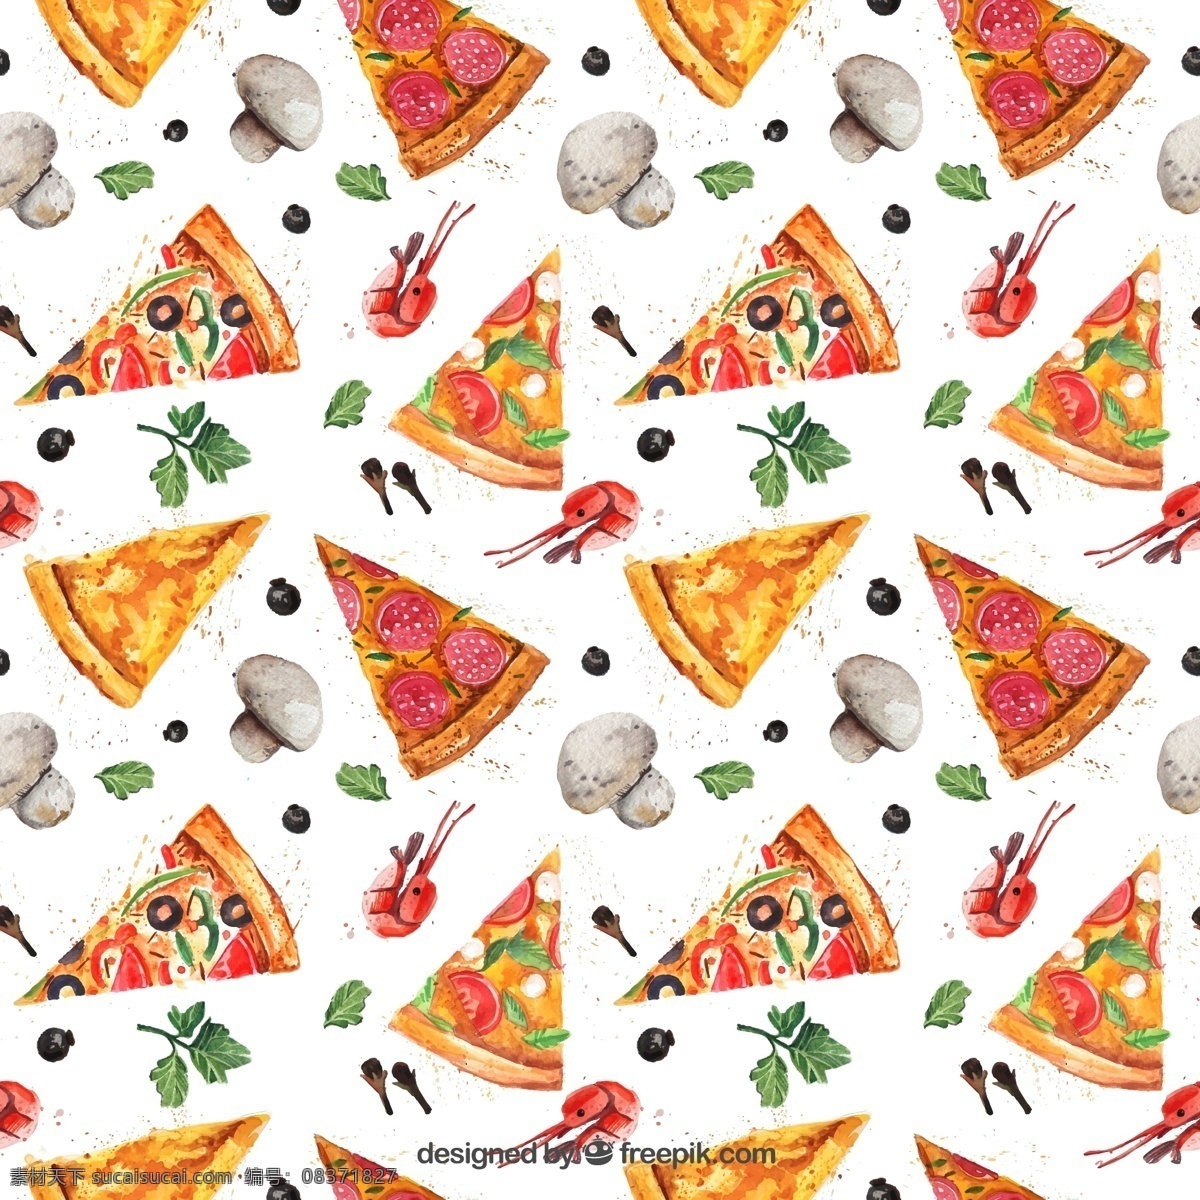 披萨无缝背景 披萨背景 三角披萨饼 快餐食品 无缝背景 蘑菇 披萨 快餐 白色